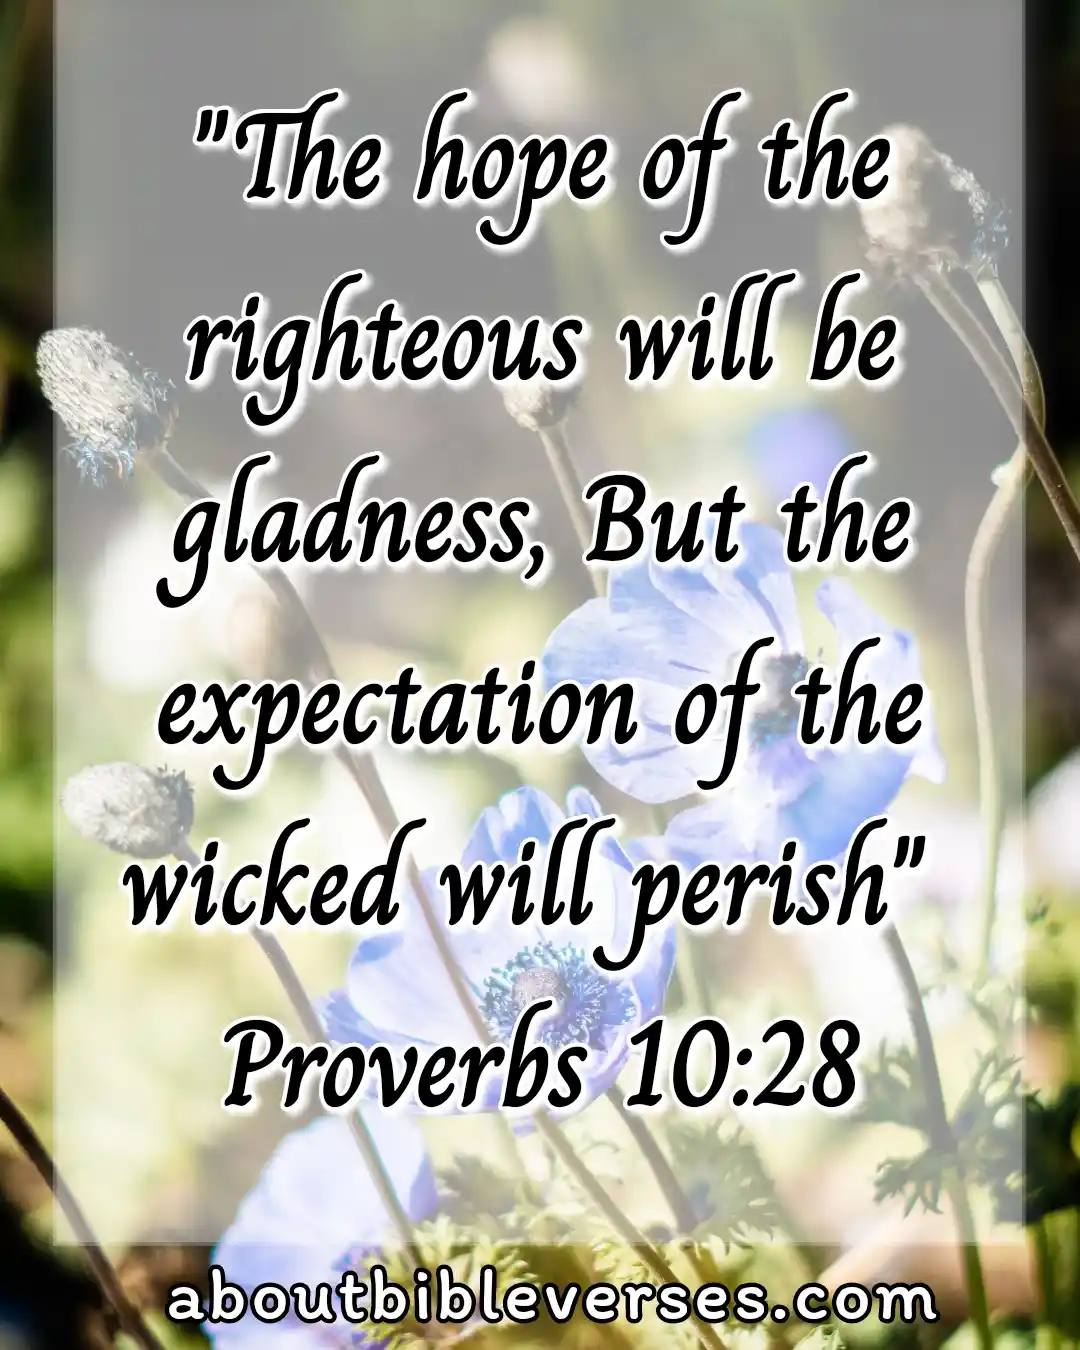 [Best] Más de 45 versículos bíblicos sobre la esperanza en tiempos difíciles